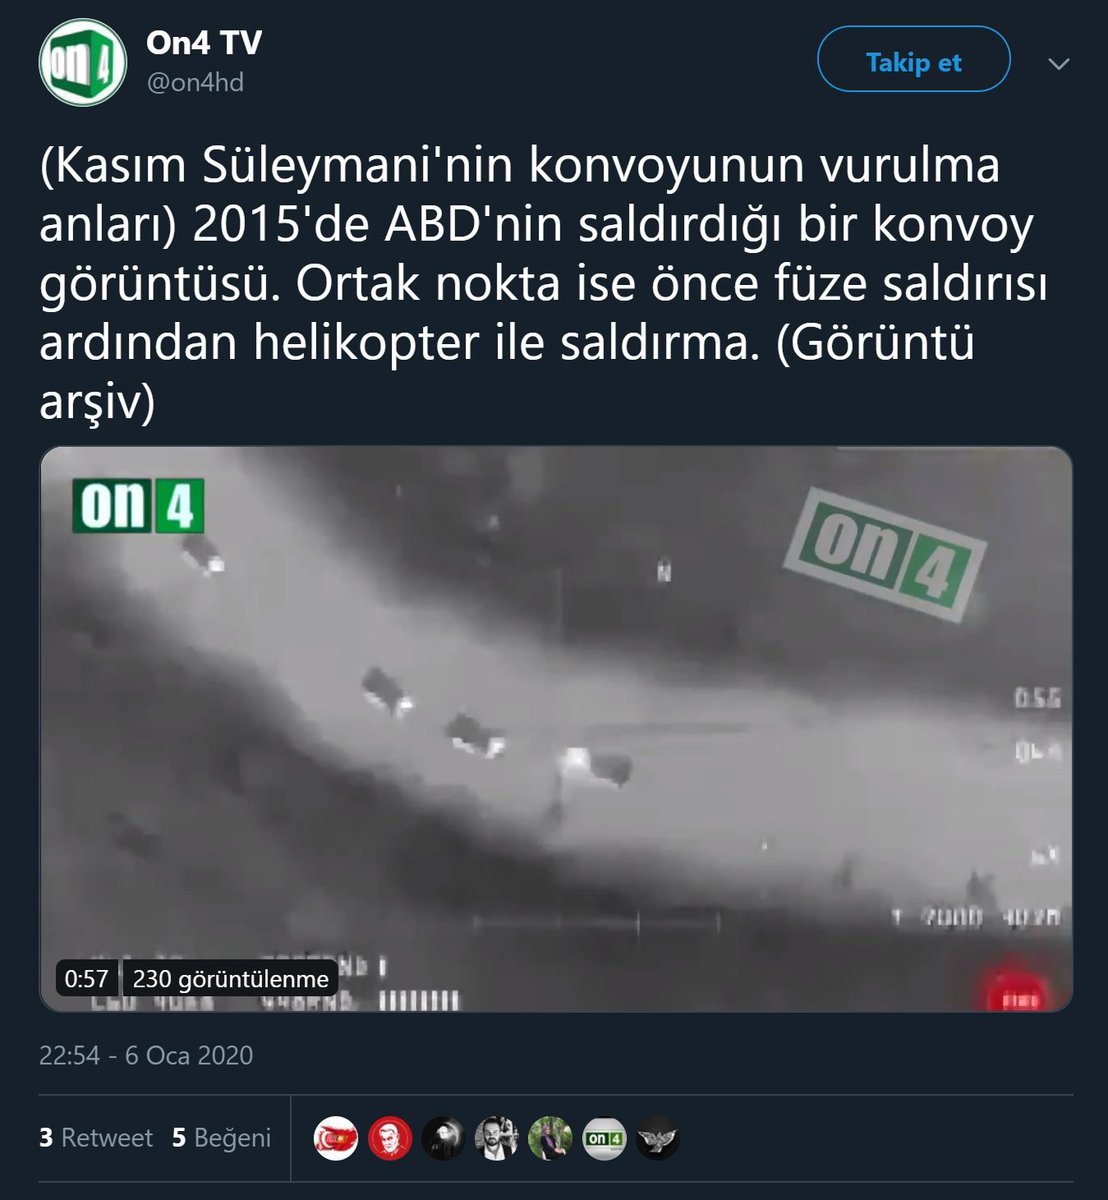 Kasım Süleymani'ye yapılan saldırı anından sanılan videoyu paylaşan haber kanalı